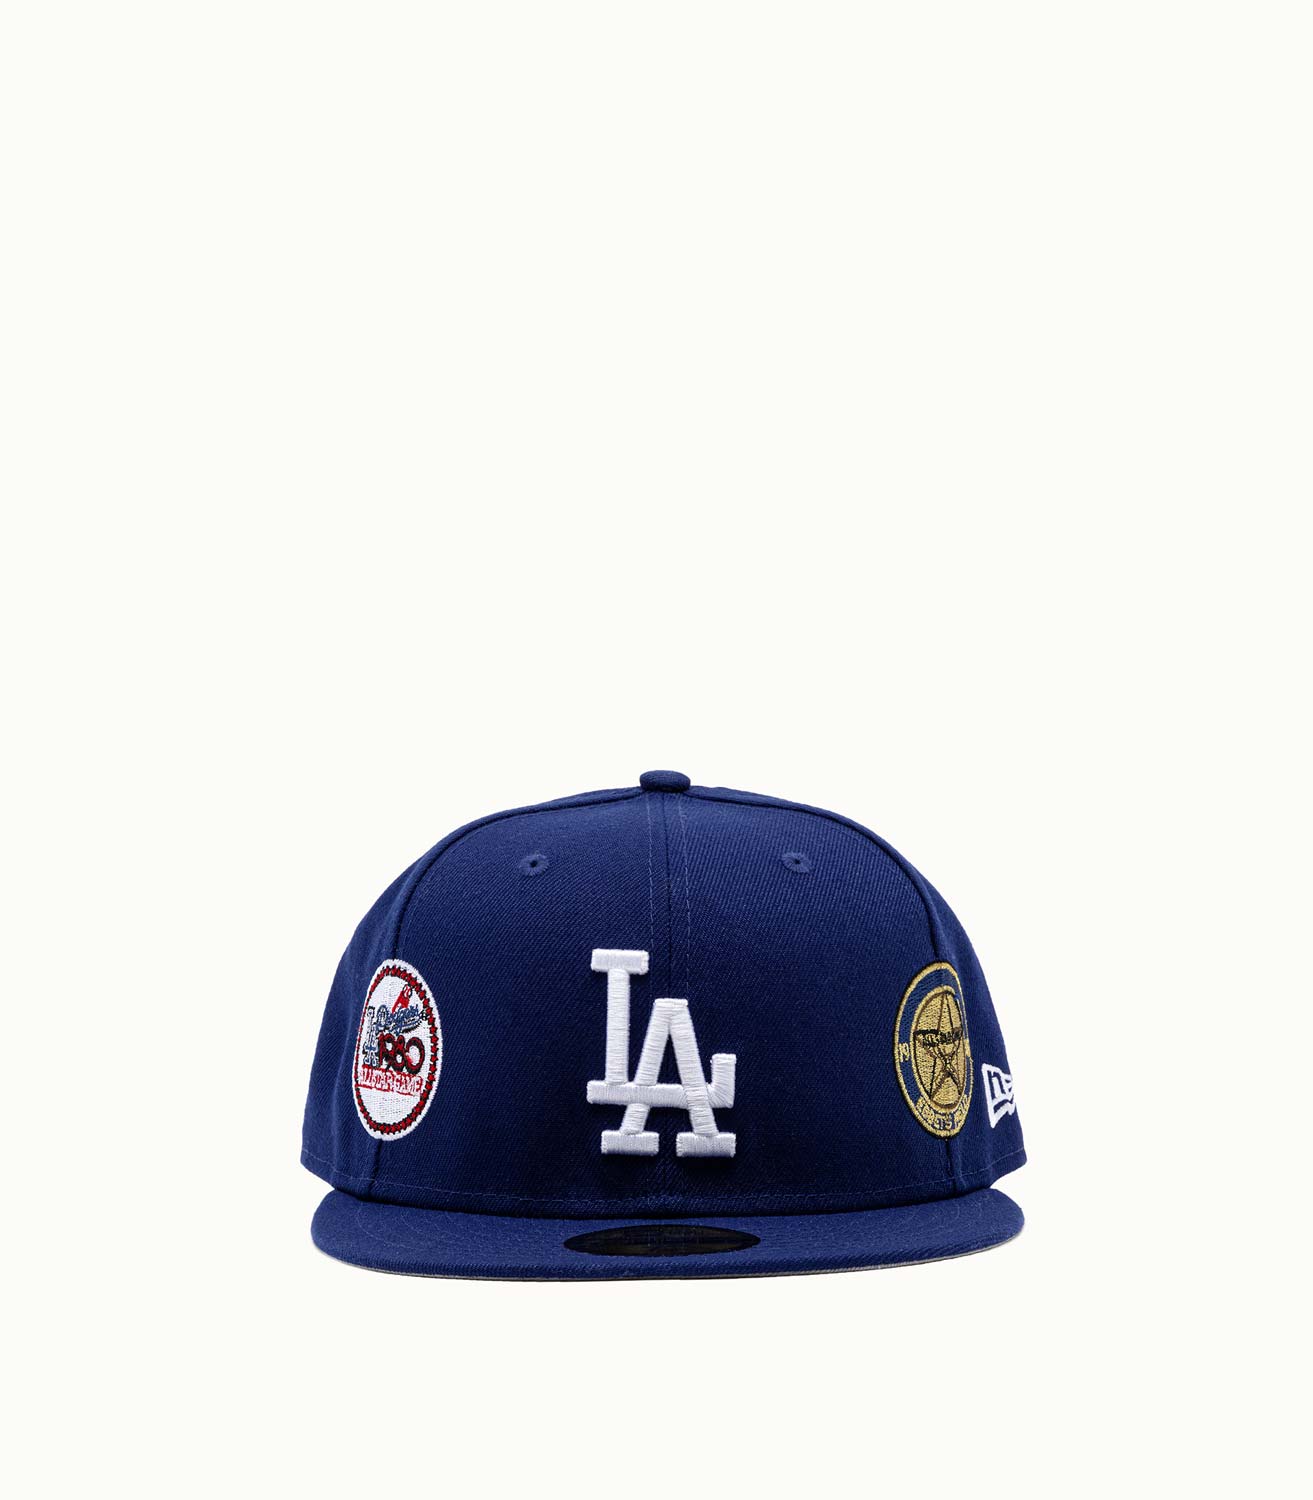 NEW ERA LOS ANGELES DODGERS BASEBALL CAP